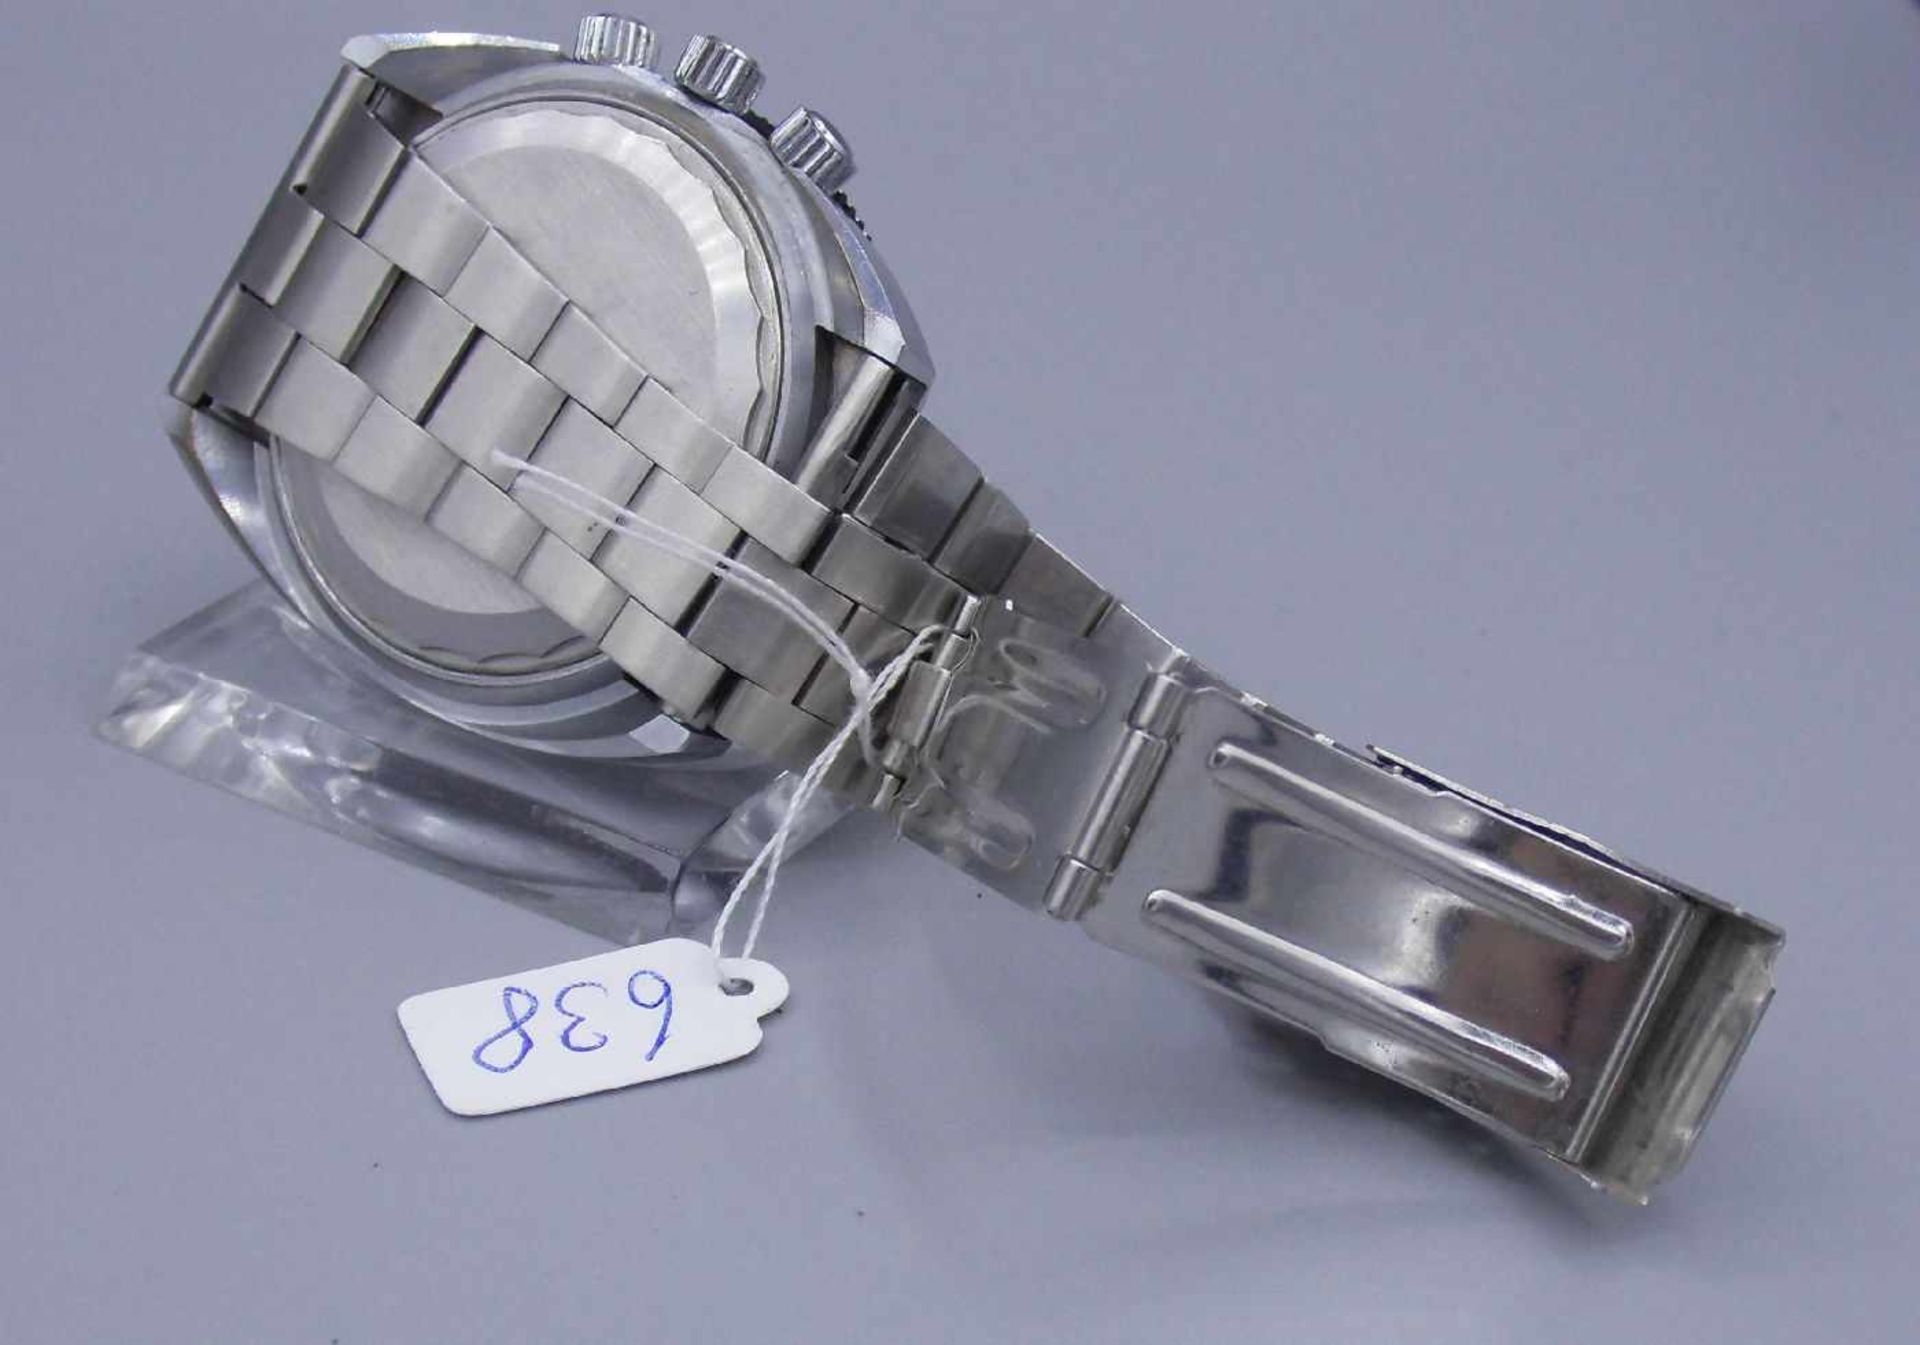 VINTAGE ARMBANDUHR : Tempic Weltzeituhr / wristwatch, mechanisches Werk. Edelstahlgehäuse an - Bild 7 aus 8